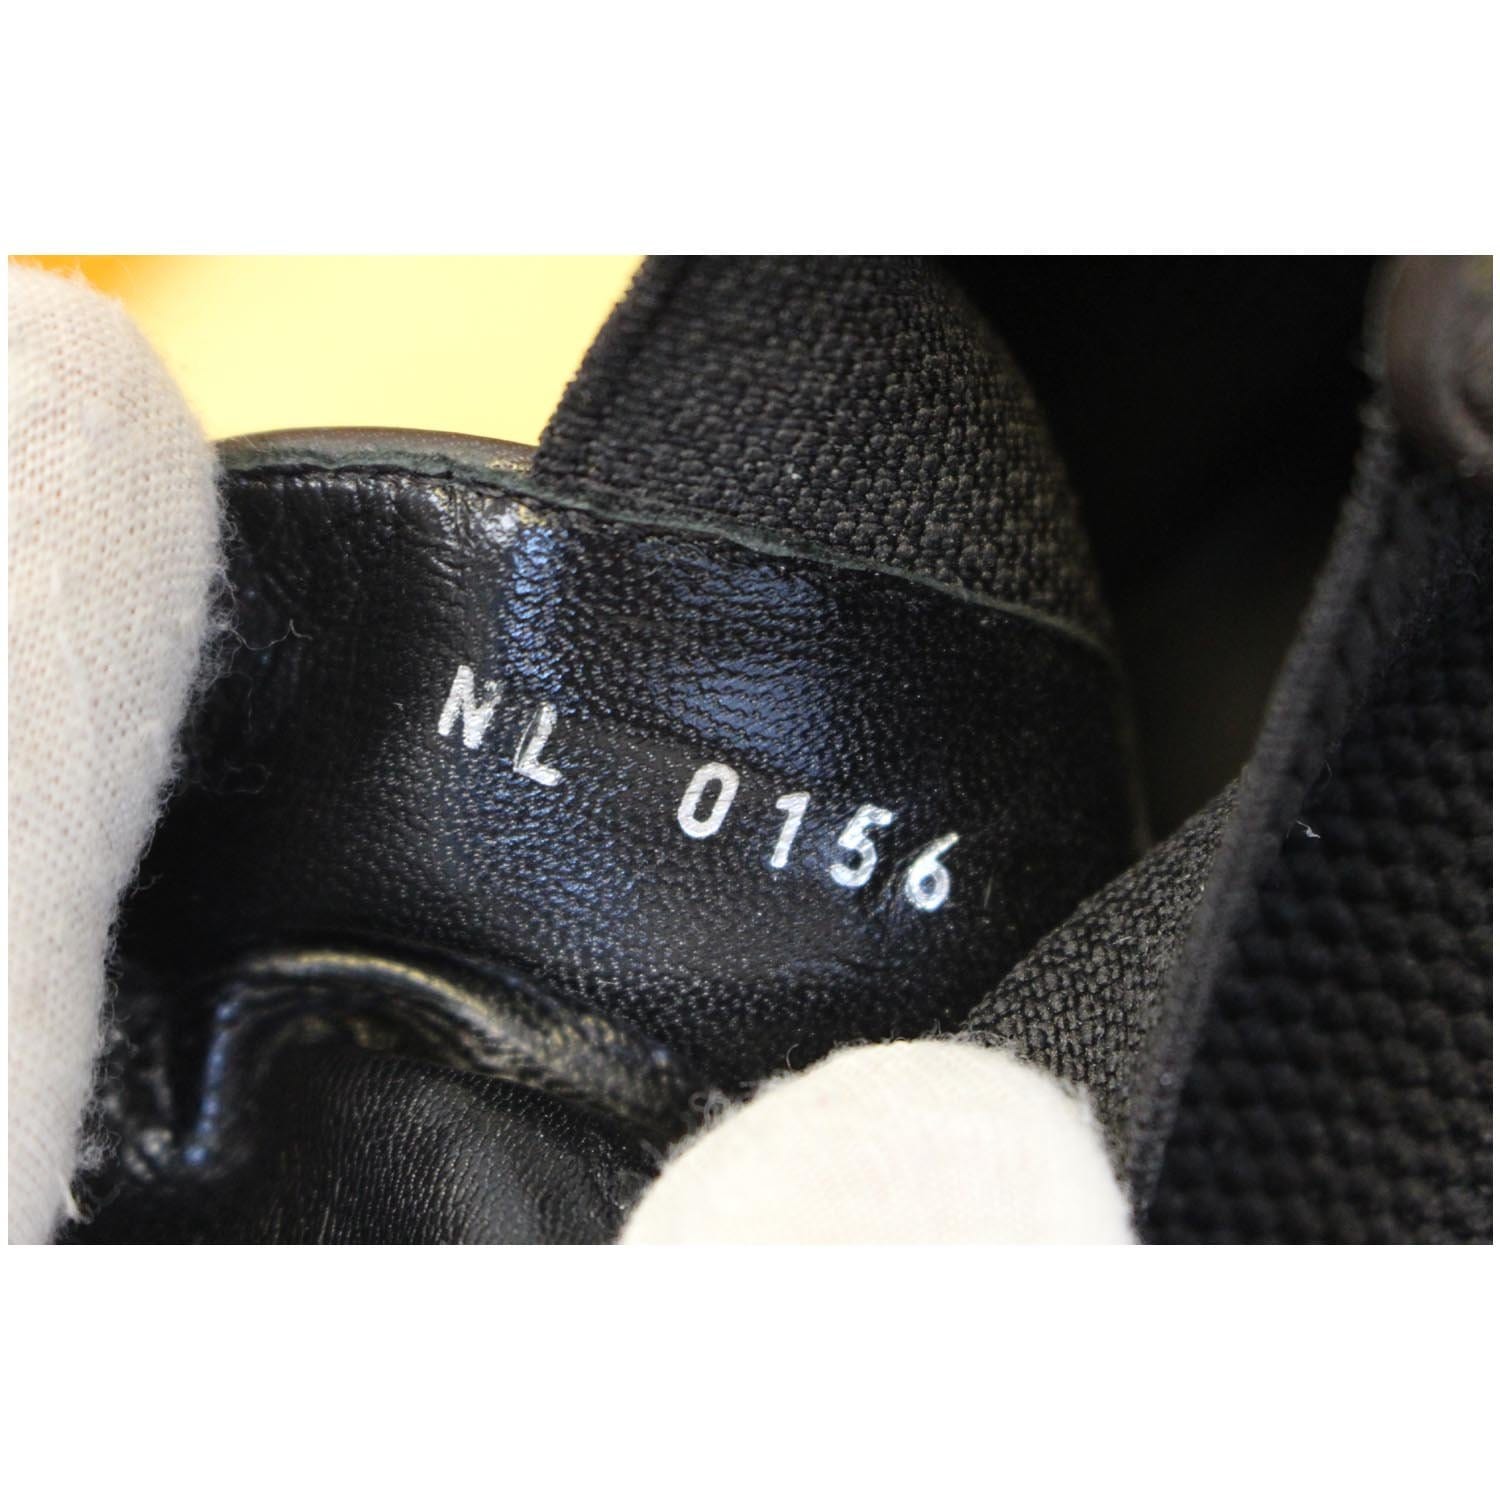 LOUIS VUITTON Monogram Canvas Revival Ankle Boots Size 37-US